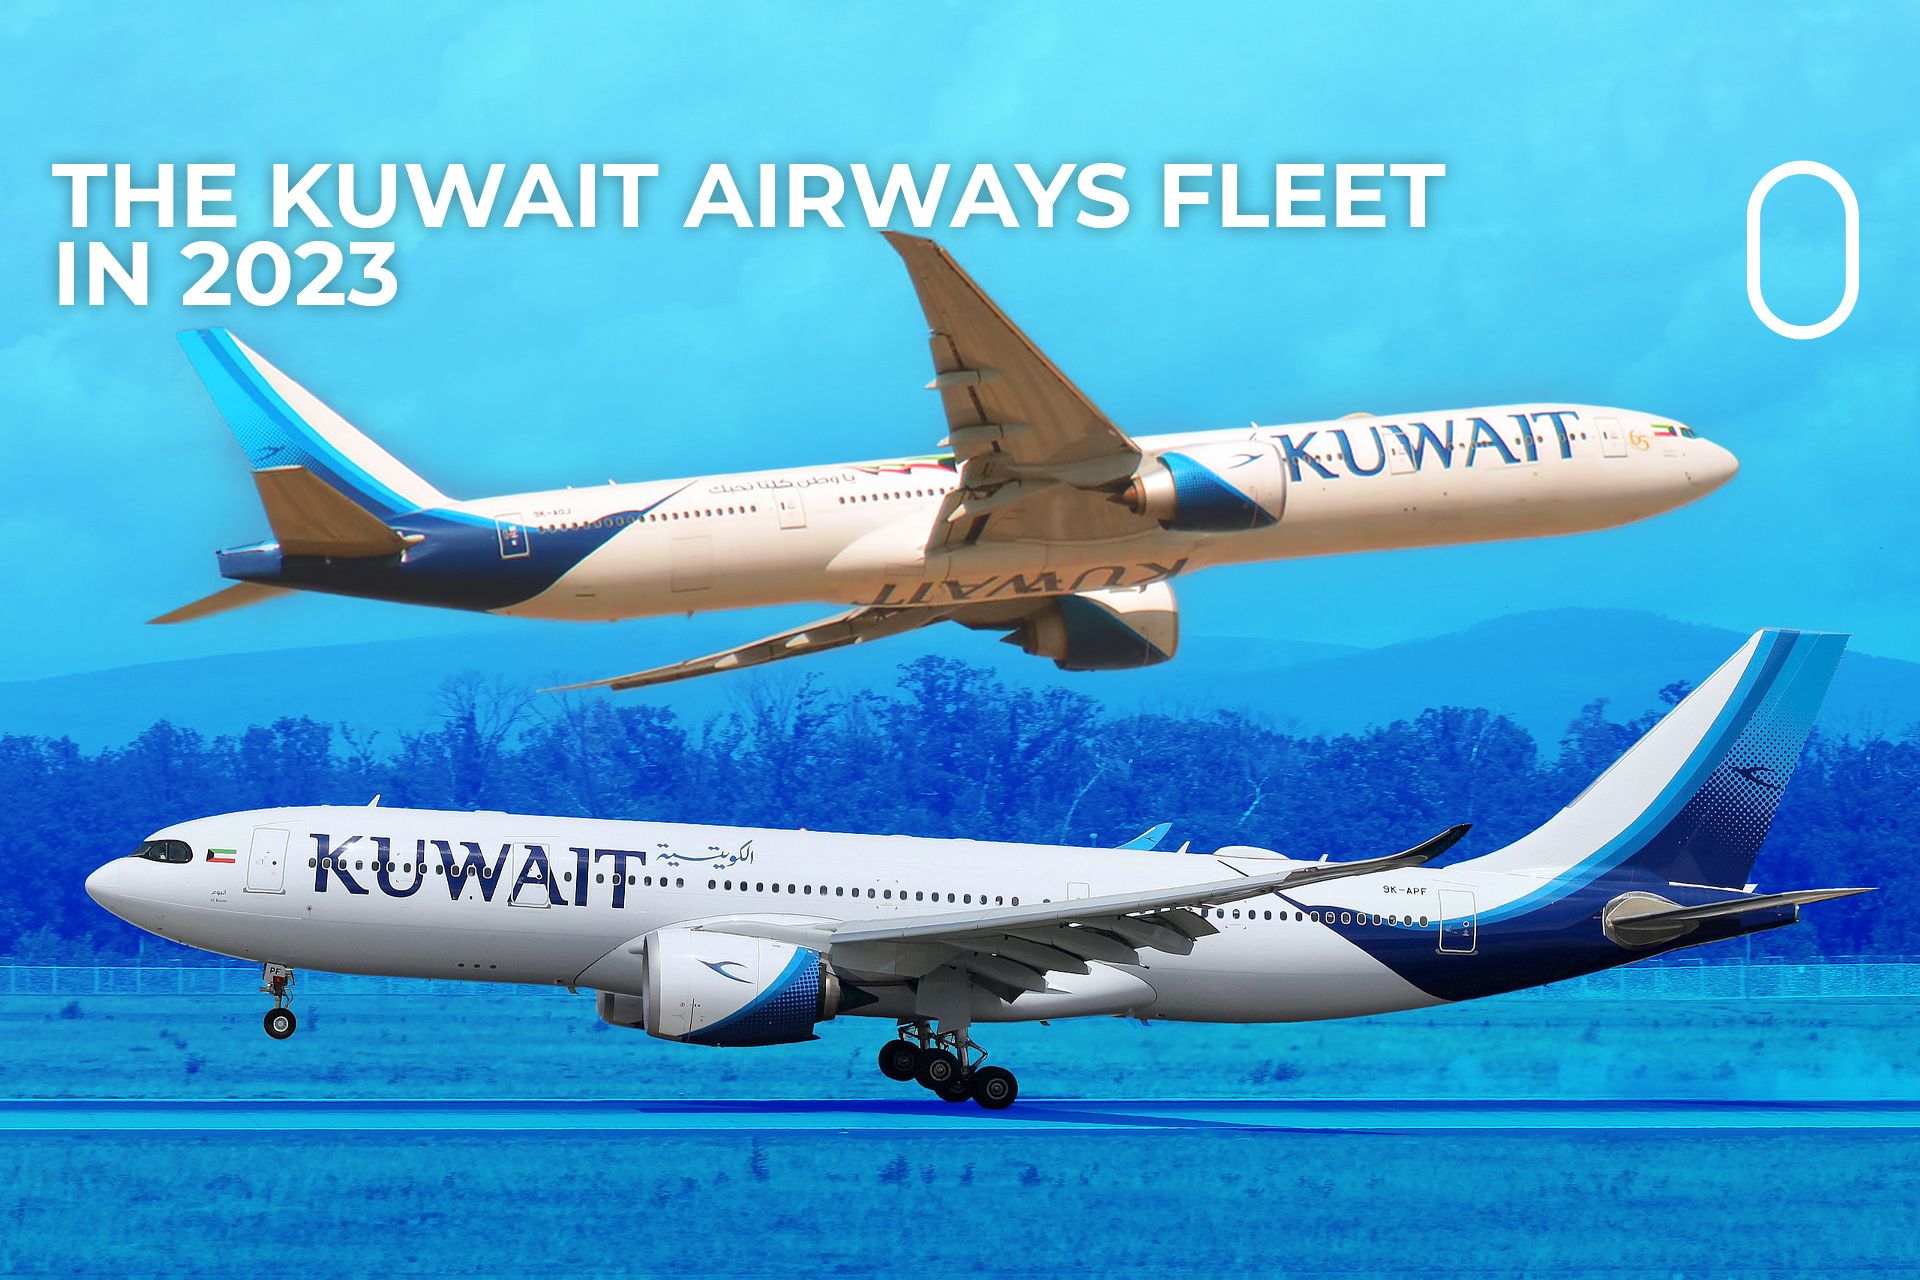 The Kuwait Airways Fleet In 2023